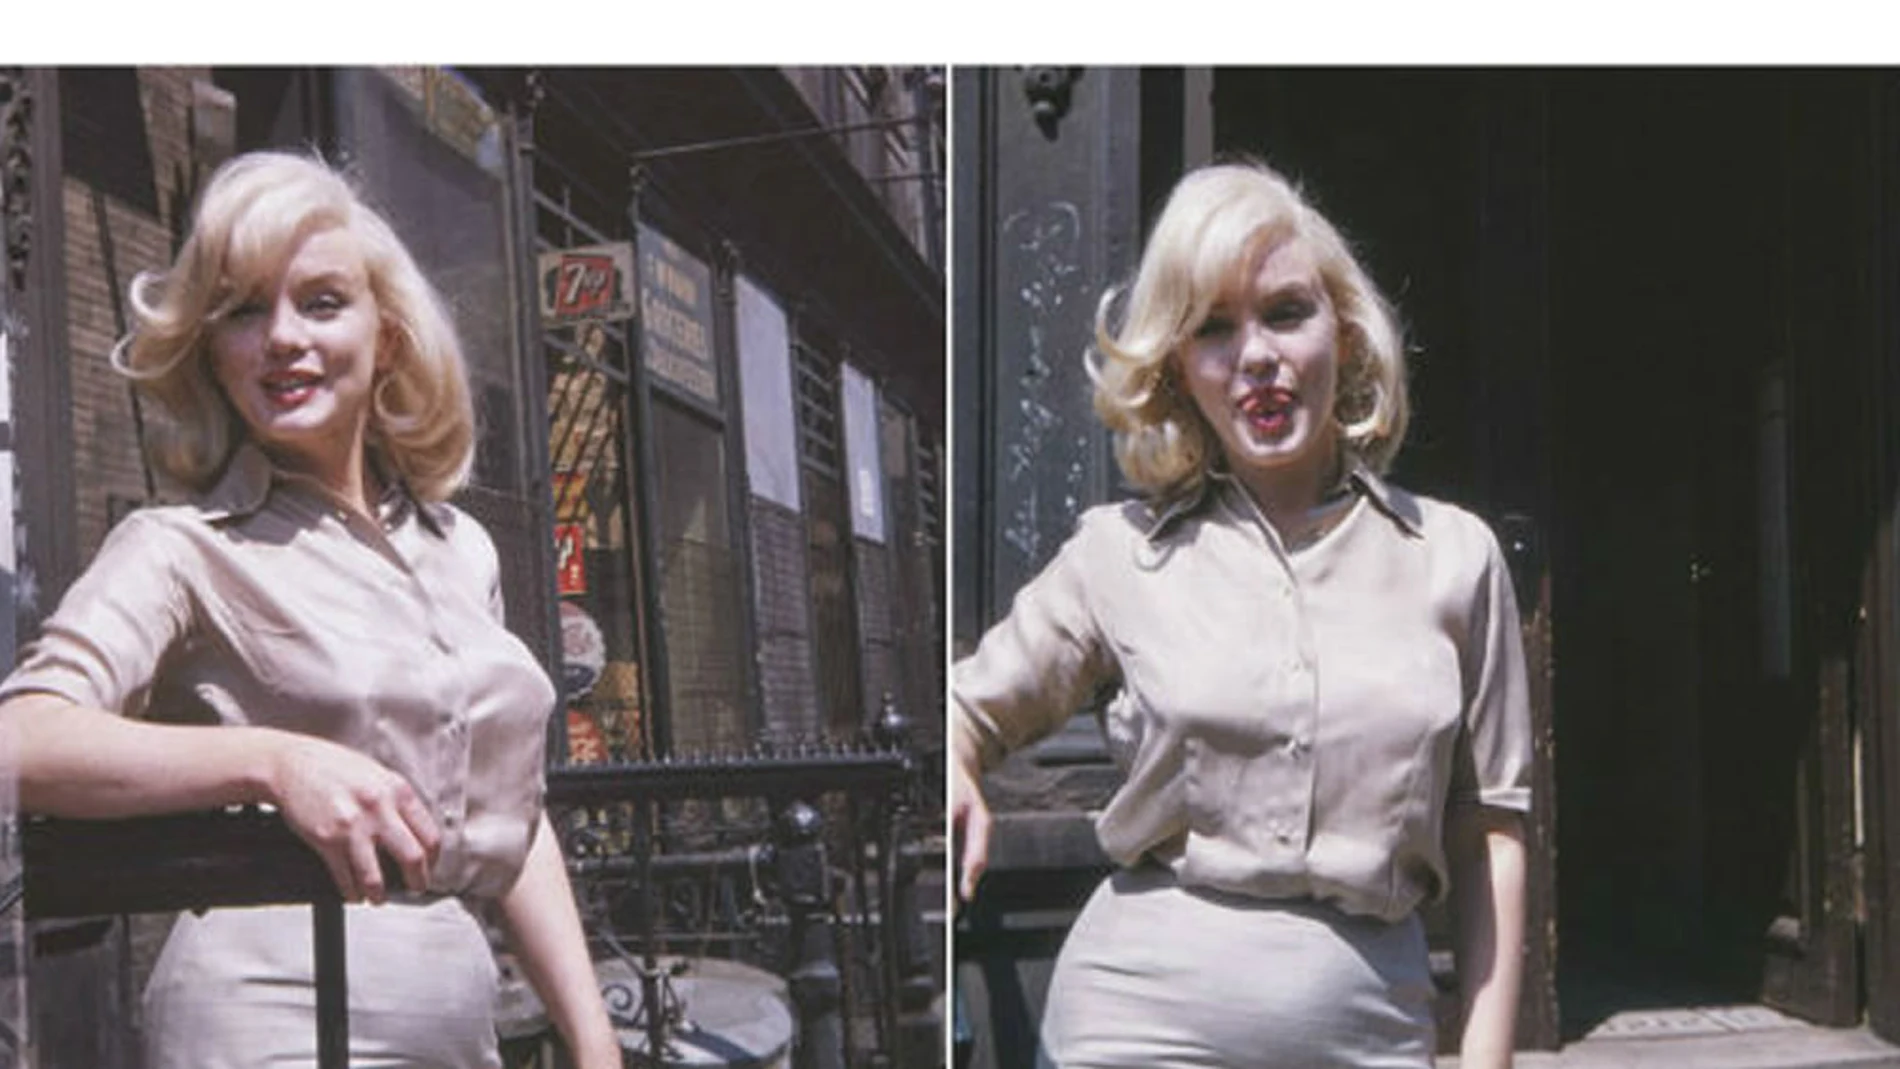  Fotos inéditas de Marilyn Monroe embarazada